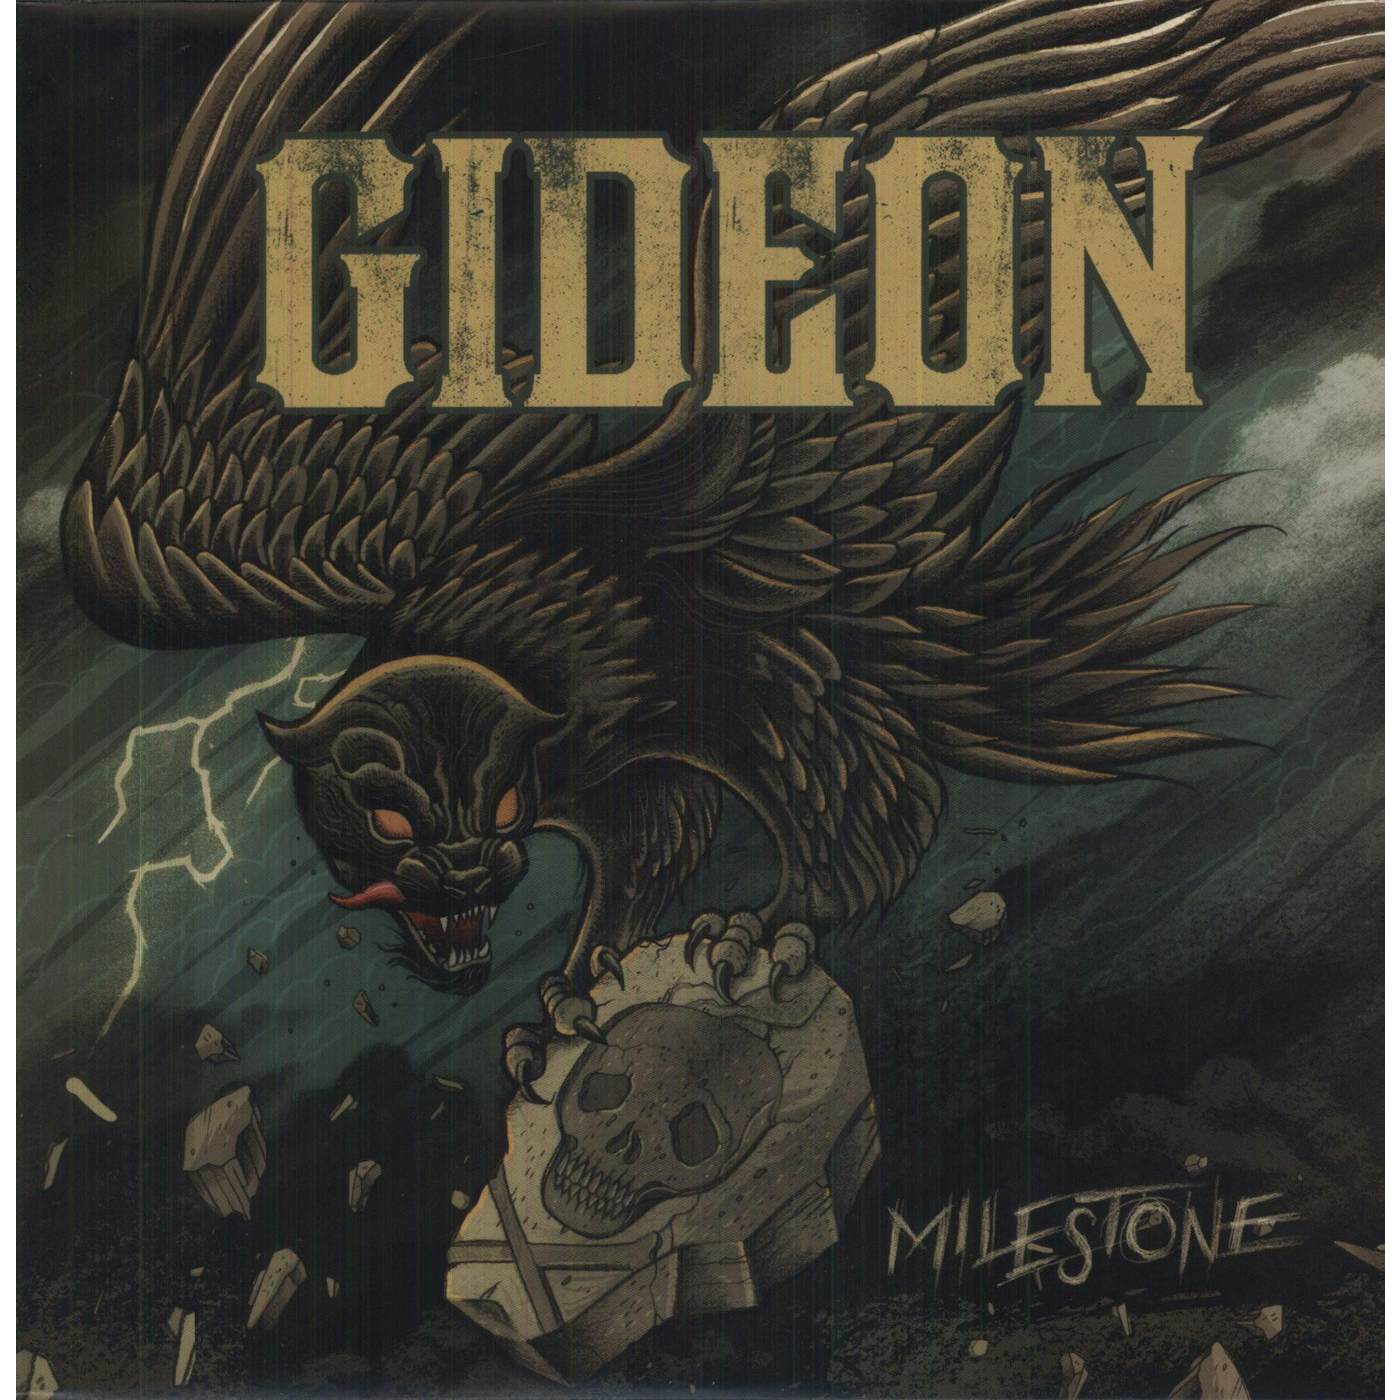 Gideon Milestone Vinyl Record